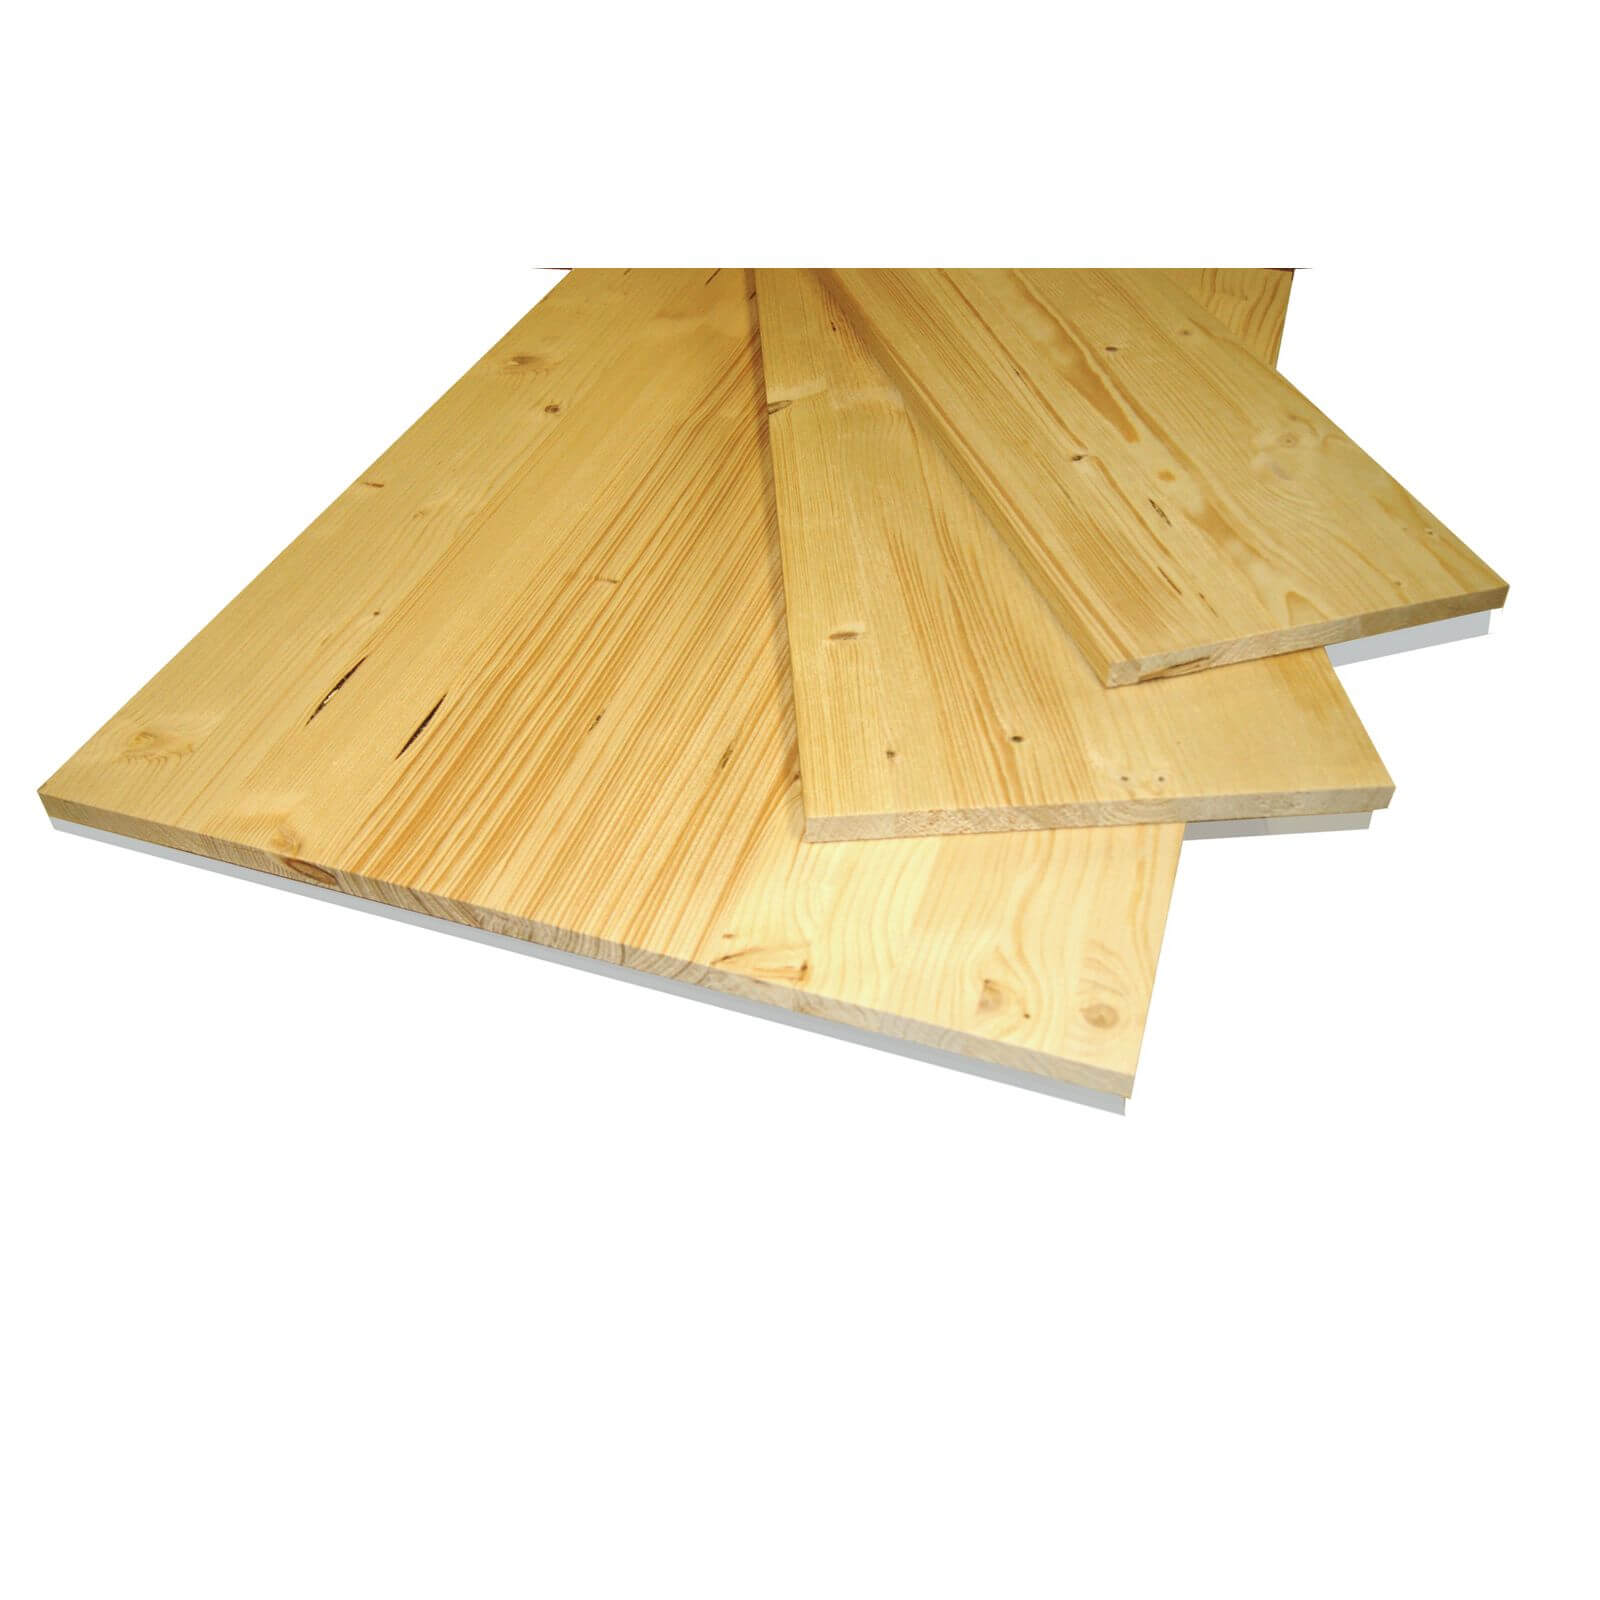 Metsa Wood Solid Spruce Wooden Panel Board 0.85m (18 x 400 x 850mm)